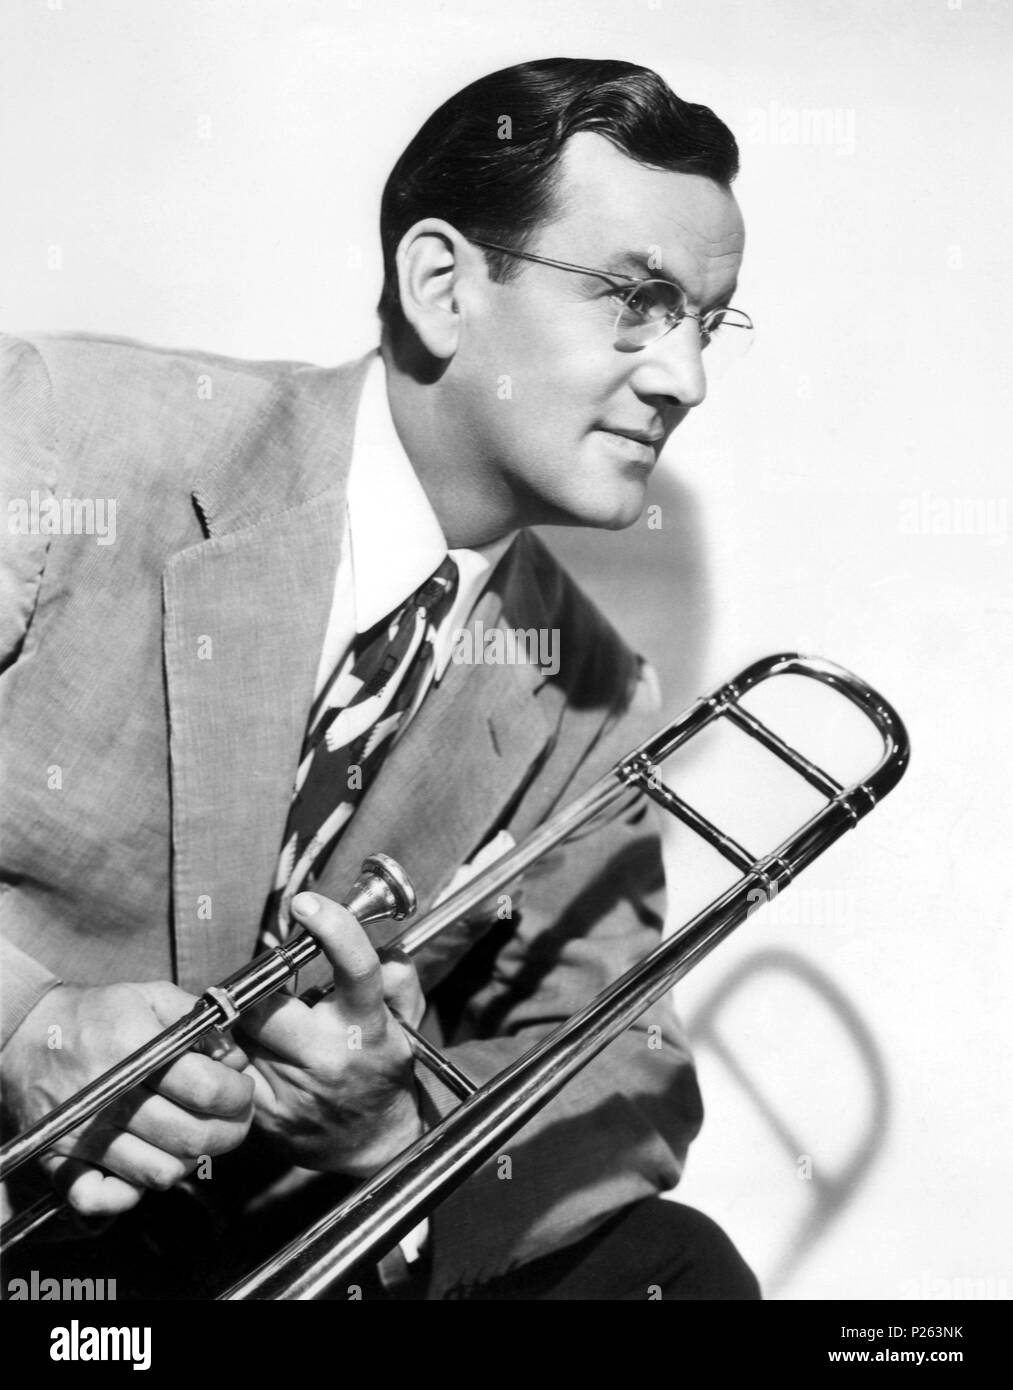 Glenn Miller - ritratto con tromba - American musicista jazz e band leader  nello Swing era - 1 Marzo 1904 - 15 dicembre 1944 Foto stock - Alamy